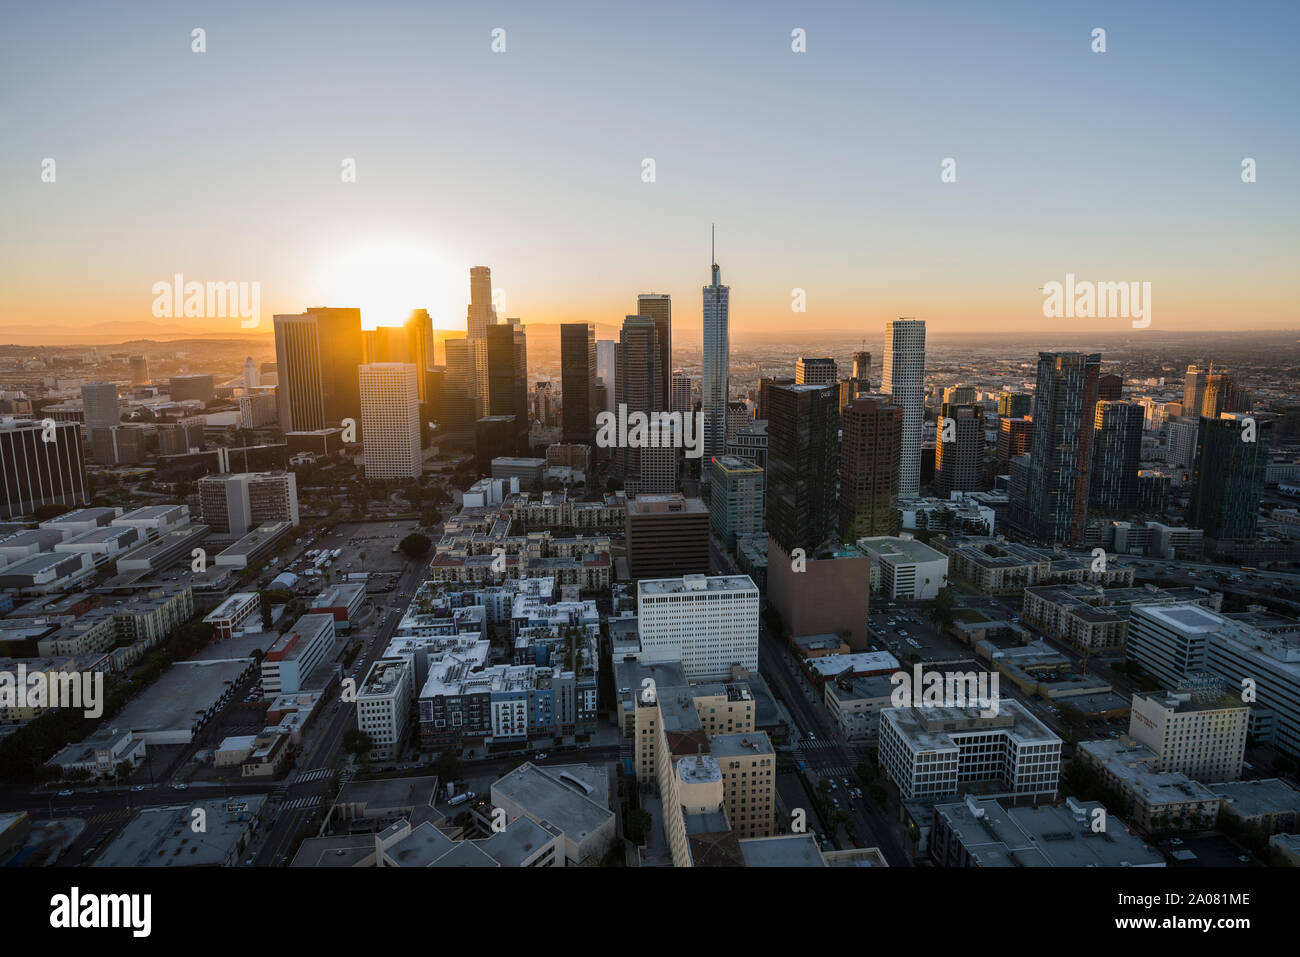 Los Angeles, Californie, USA - 20 Février 2018 : Lever du Soleil Vue aérienne de bâtiments urbains et des rues au centre-ville de Los Angeles. Banque D'Images